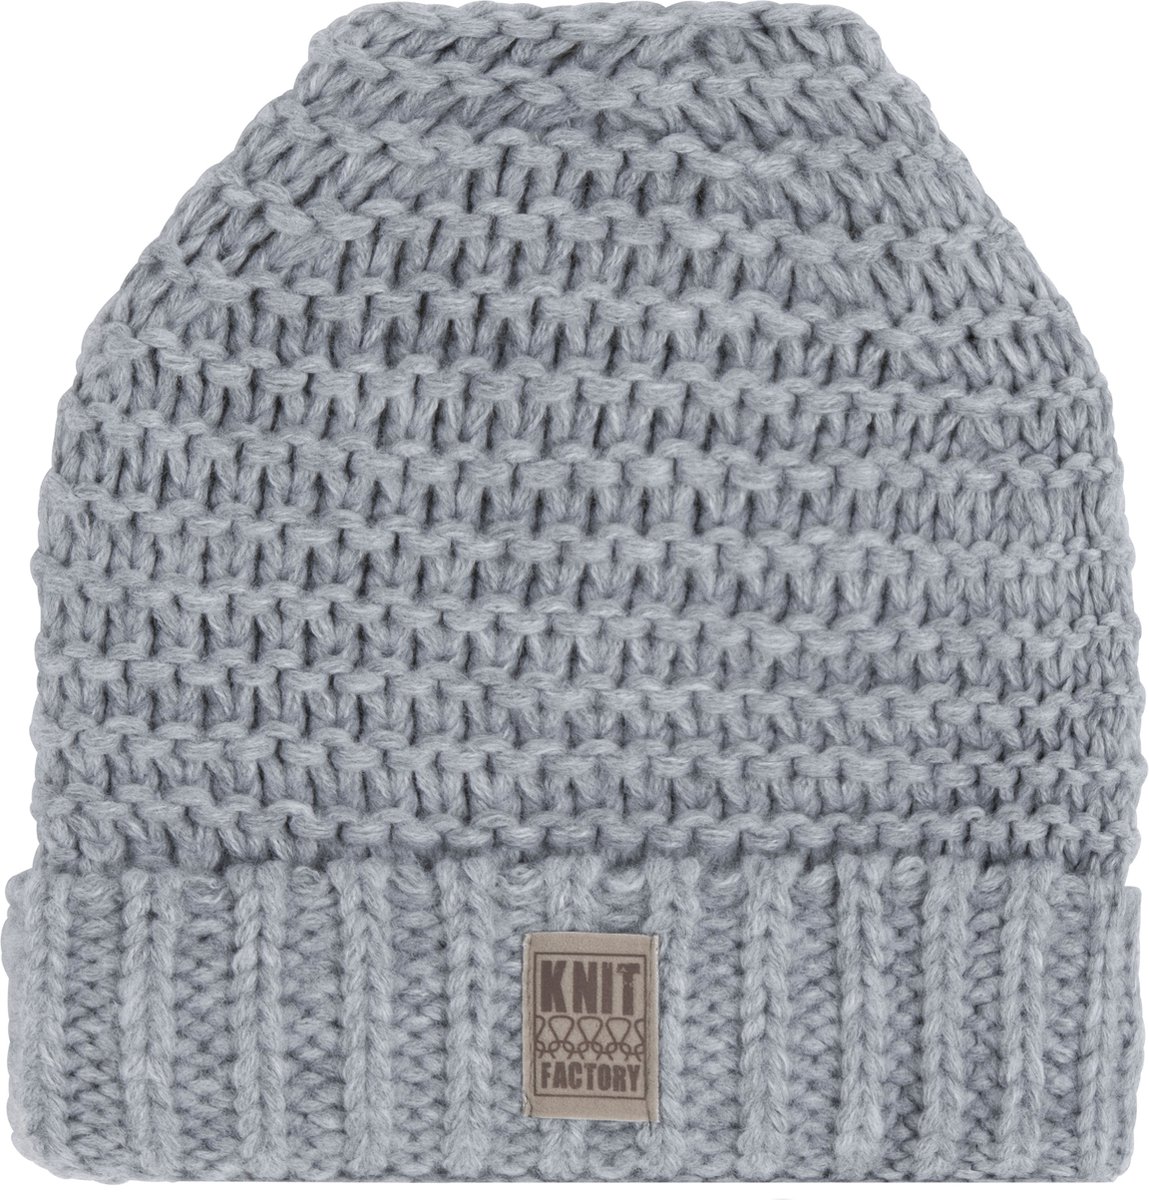 Knit Factory Alex Gebreide Muts Heren & Dames - Beanie hat - Licht Grijs - Grofgebreid - Warme lichtgrijze Wintermuts - Unisex - One Size